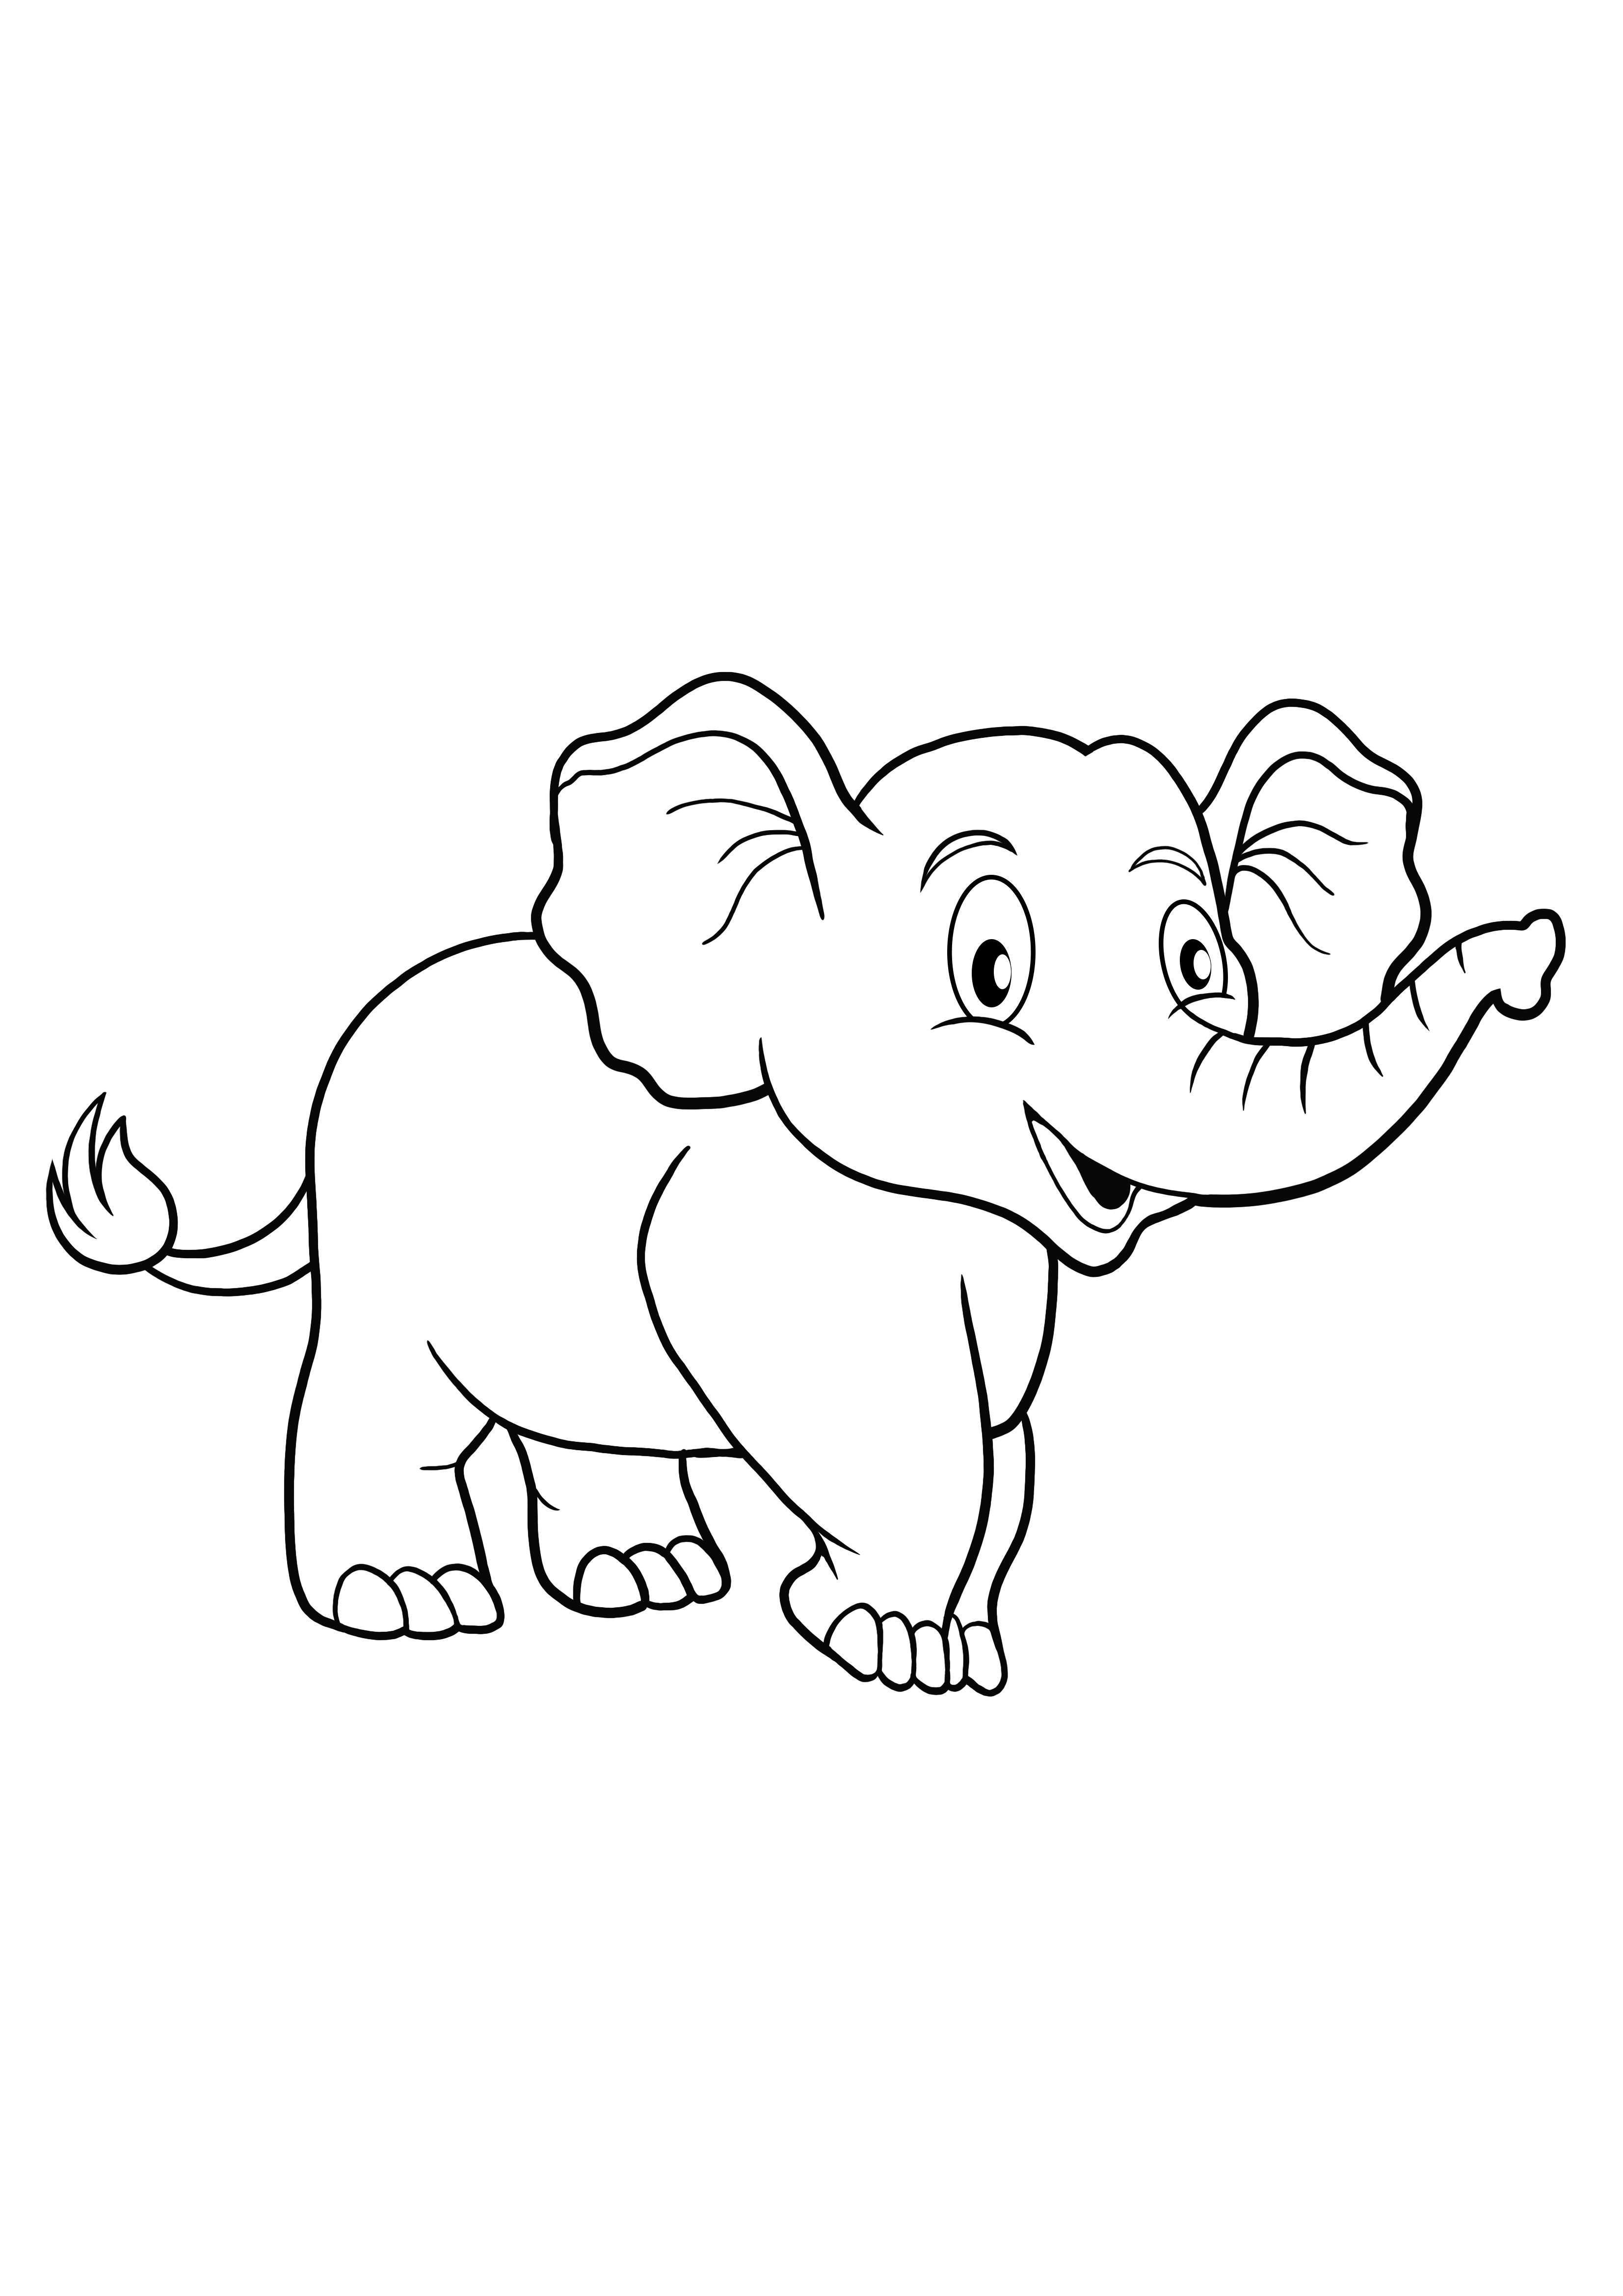 Elefante ambulante para colorir e imprimir facilmente